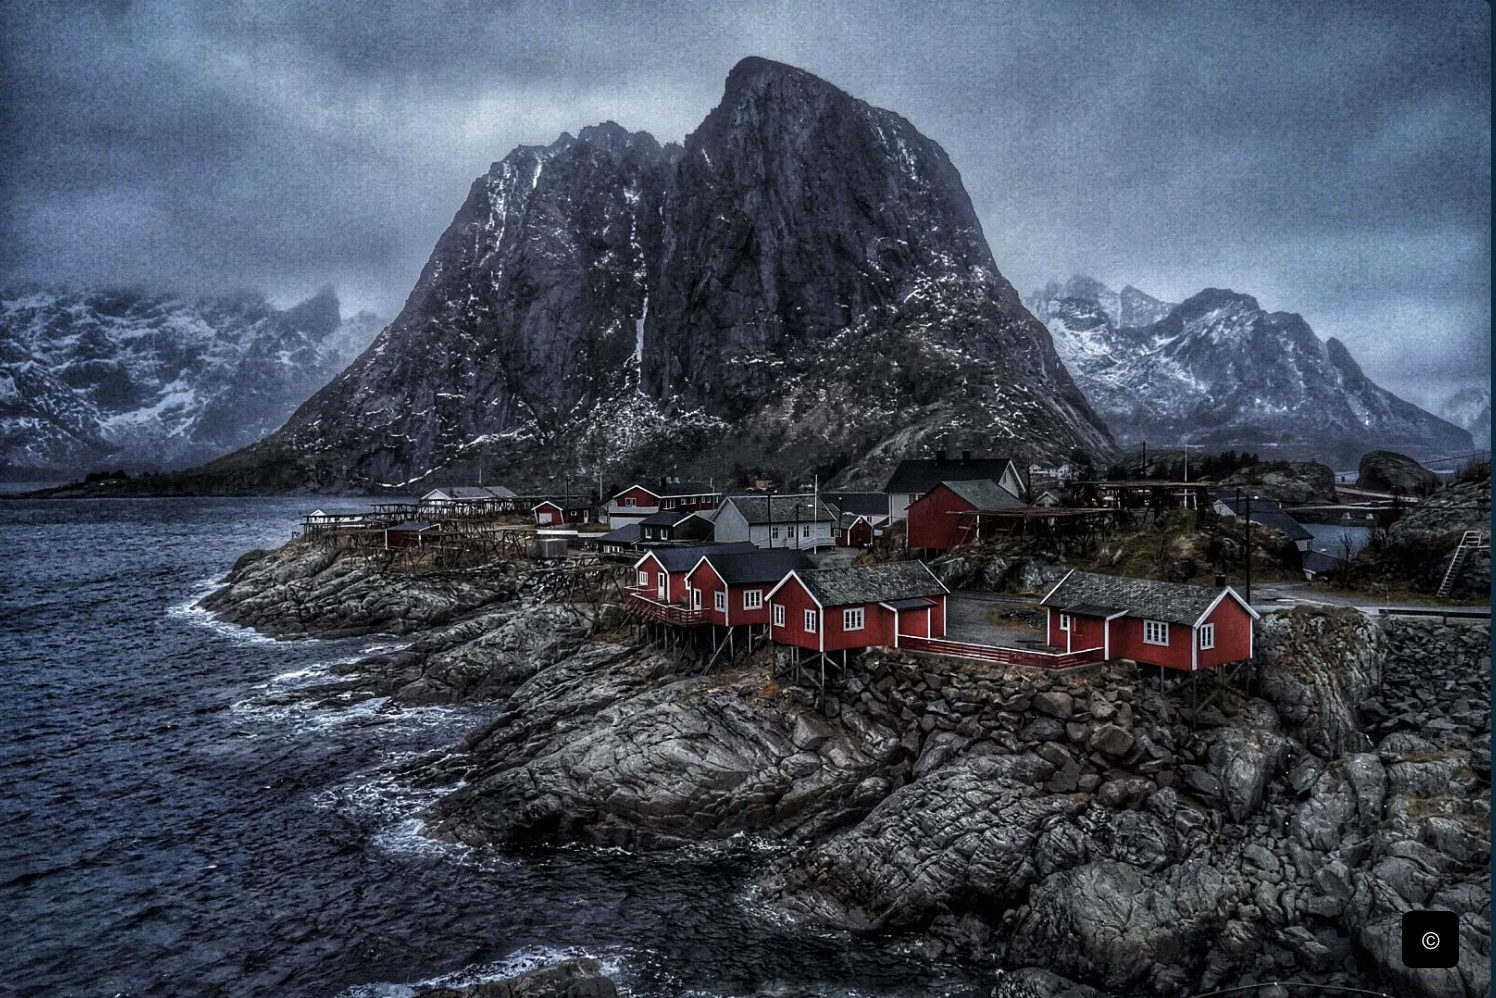 Lofoten Islands: Unforgettable Beauty in Norway